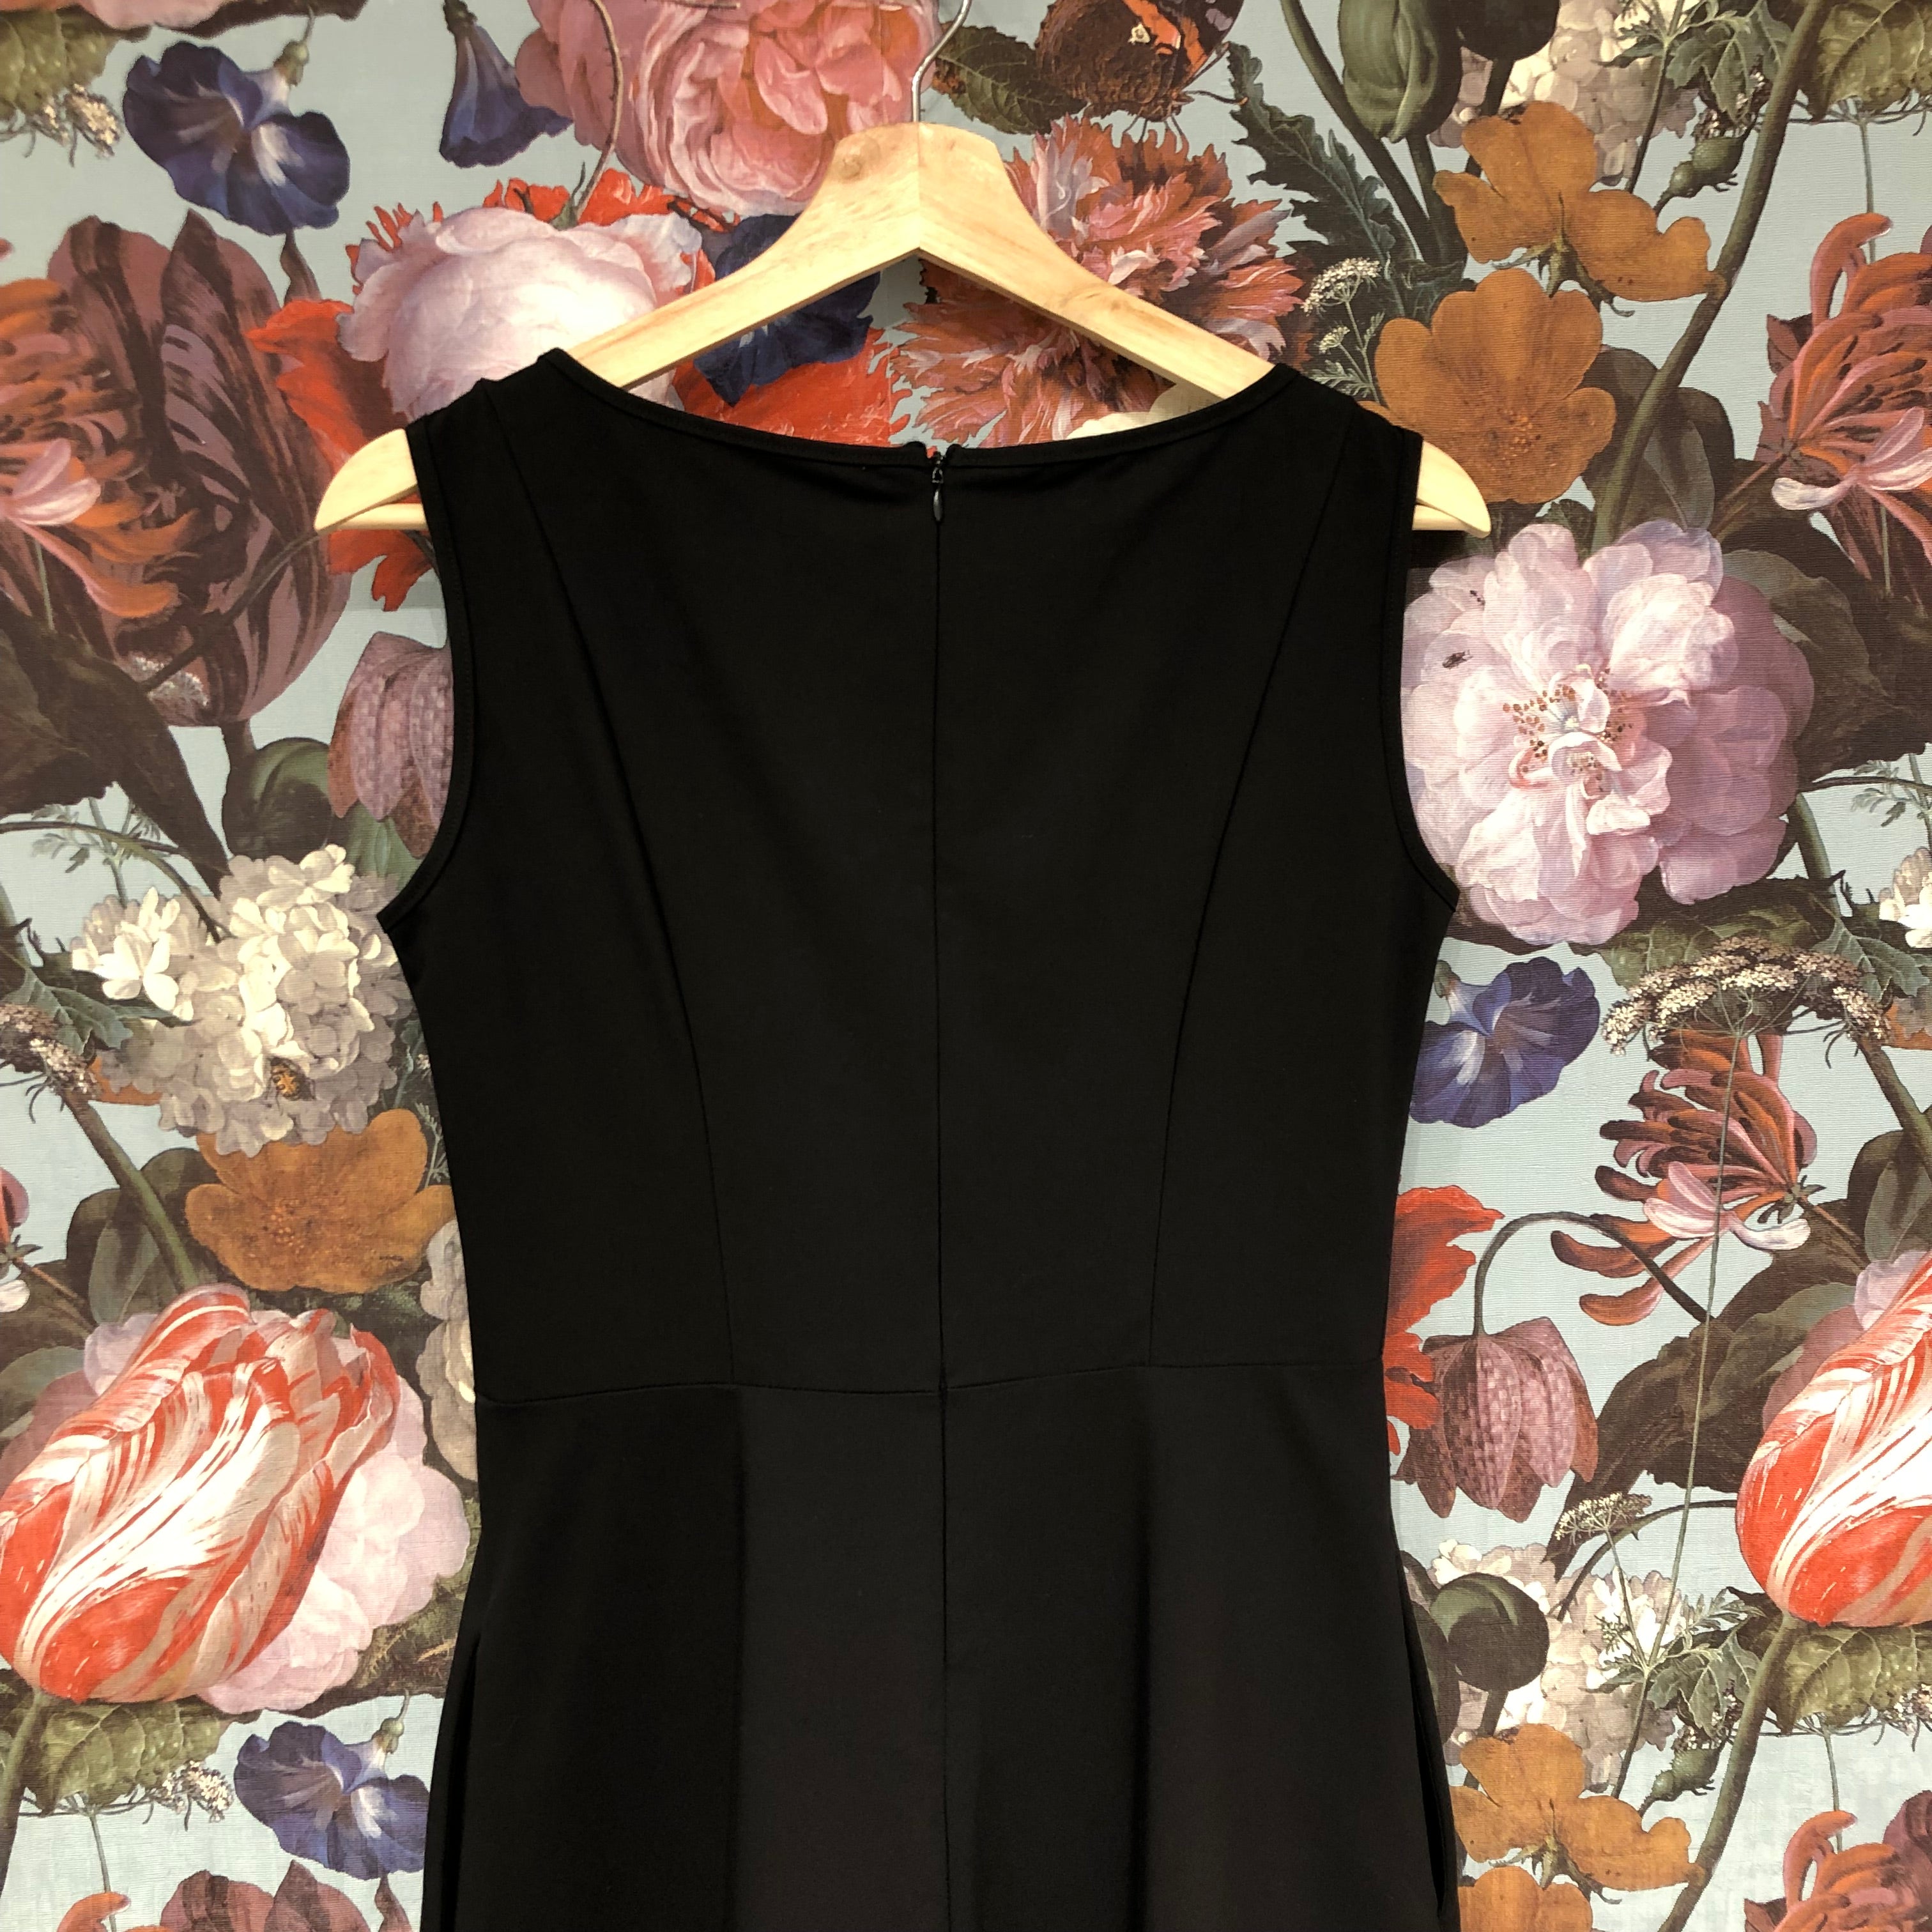 Sara Duke // A-Line Dress Black and Blush